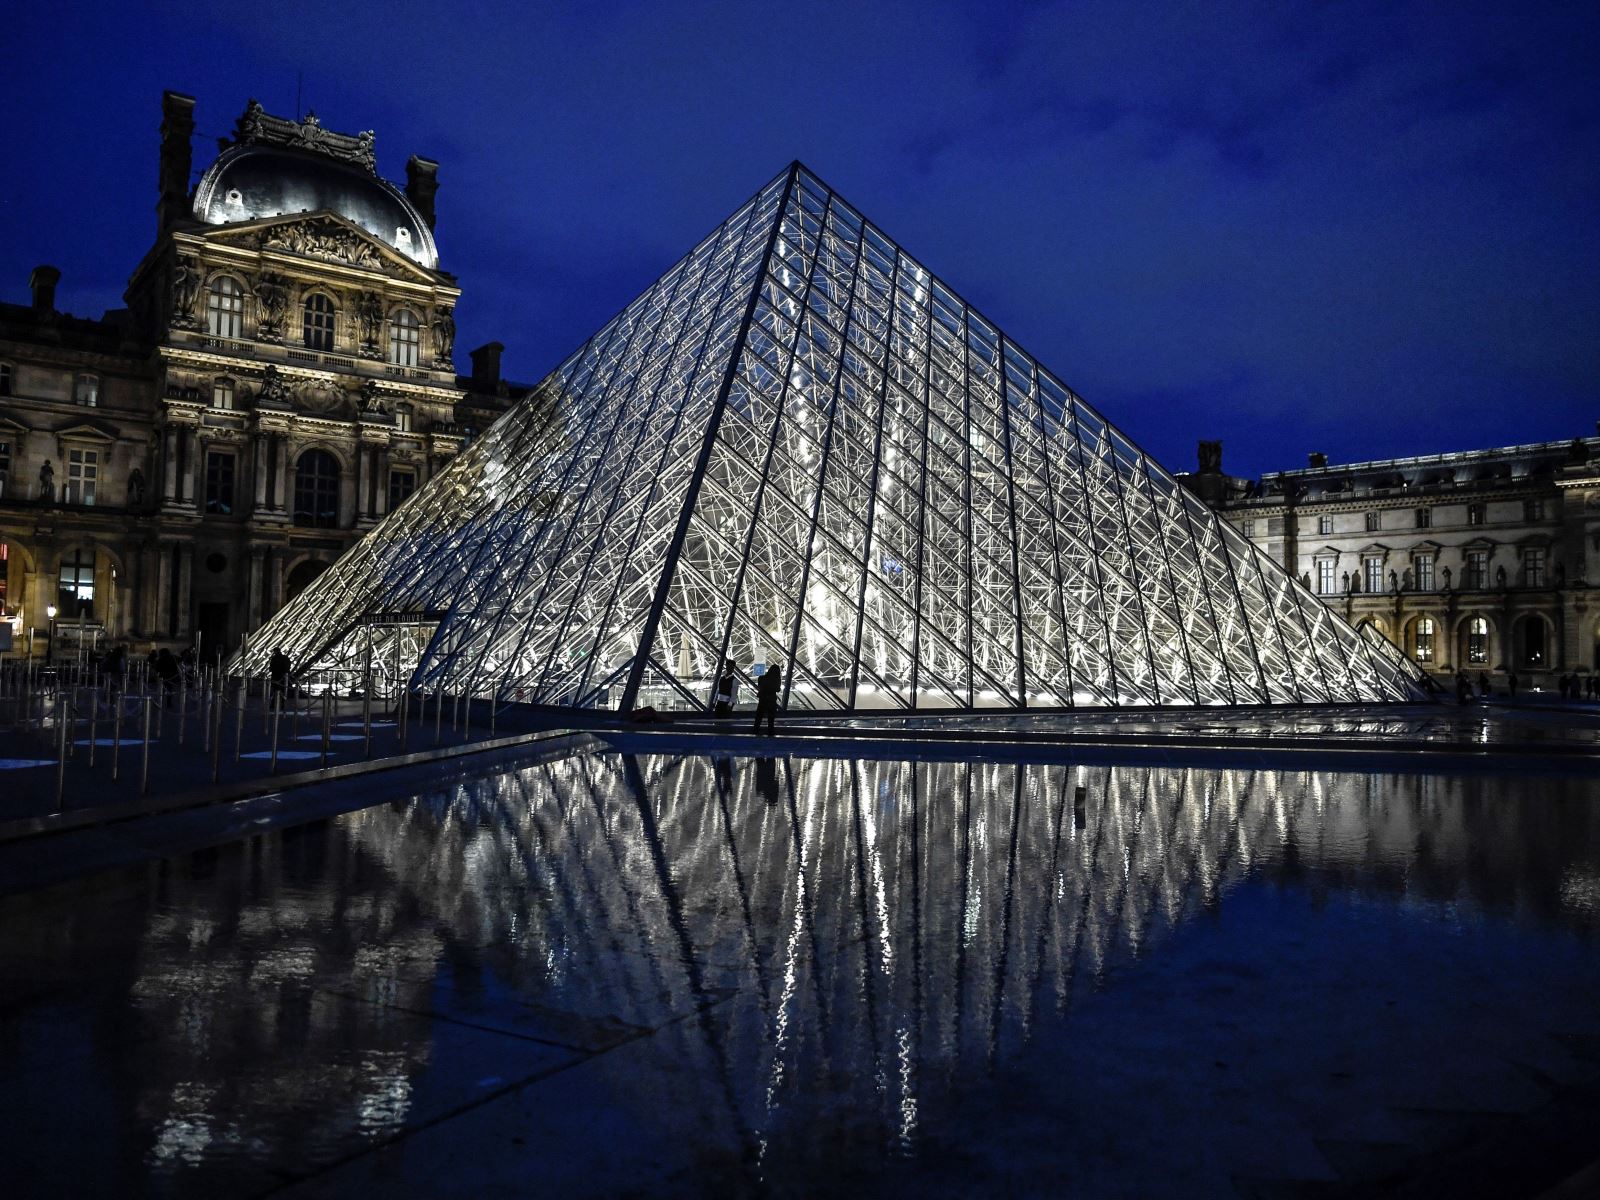  Paris. Tháp Eiffel. Cung điện Versailles. Bảo tàng Louvre. Bảo tàng Orsay